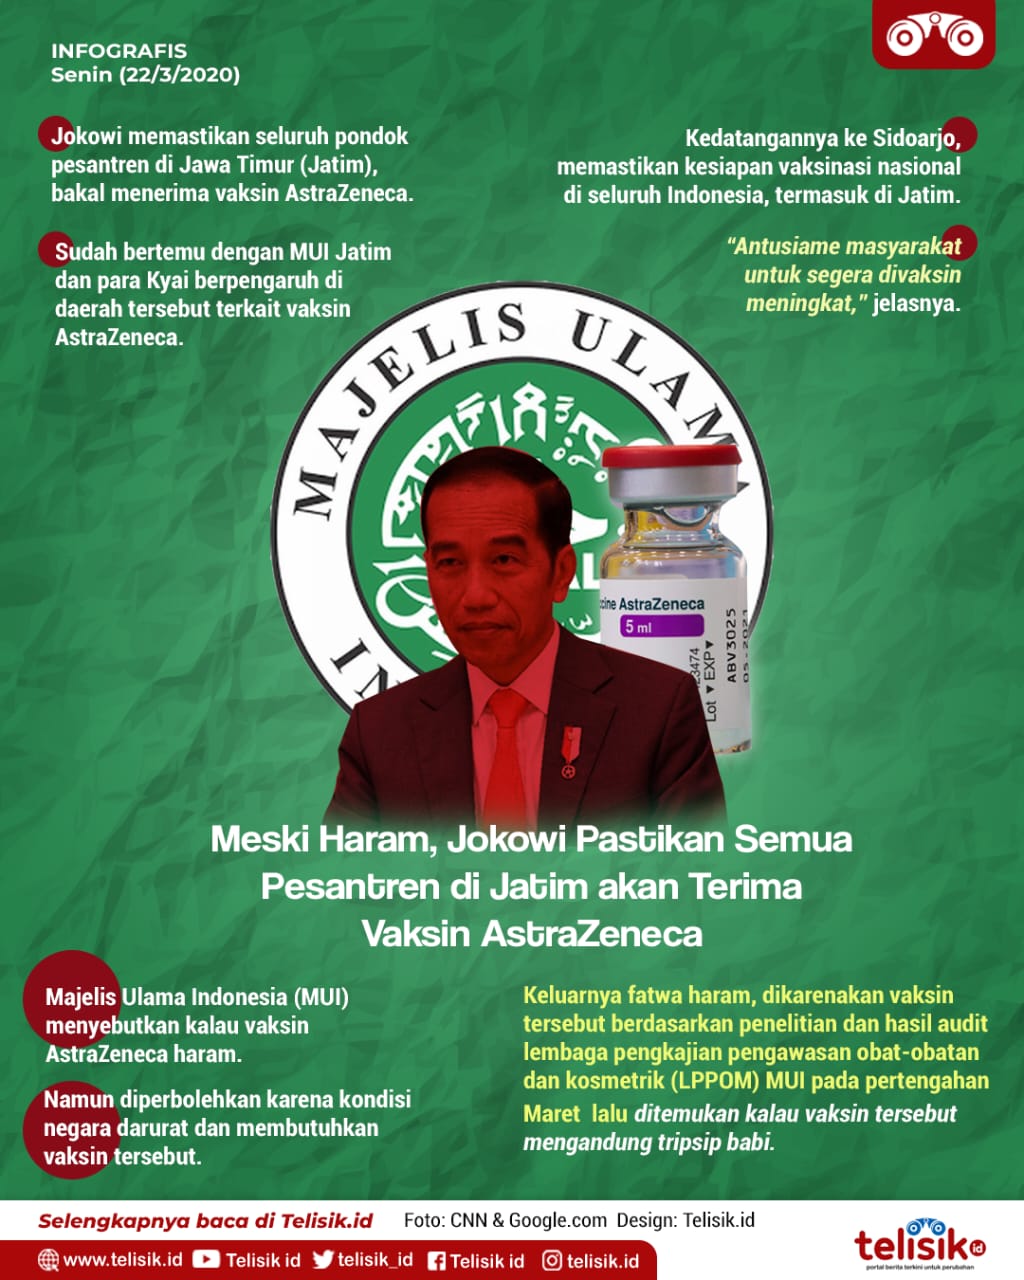 Infografis: Meski Haram, Jokowi Pastikan Semua Pesantren di Jatim akan Terima Vaksin AstraZeneca